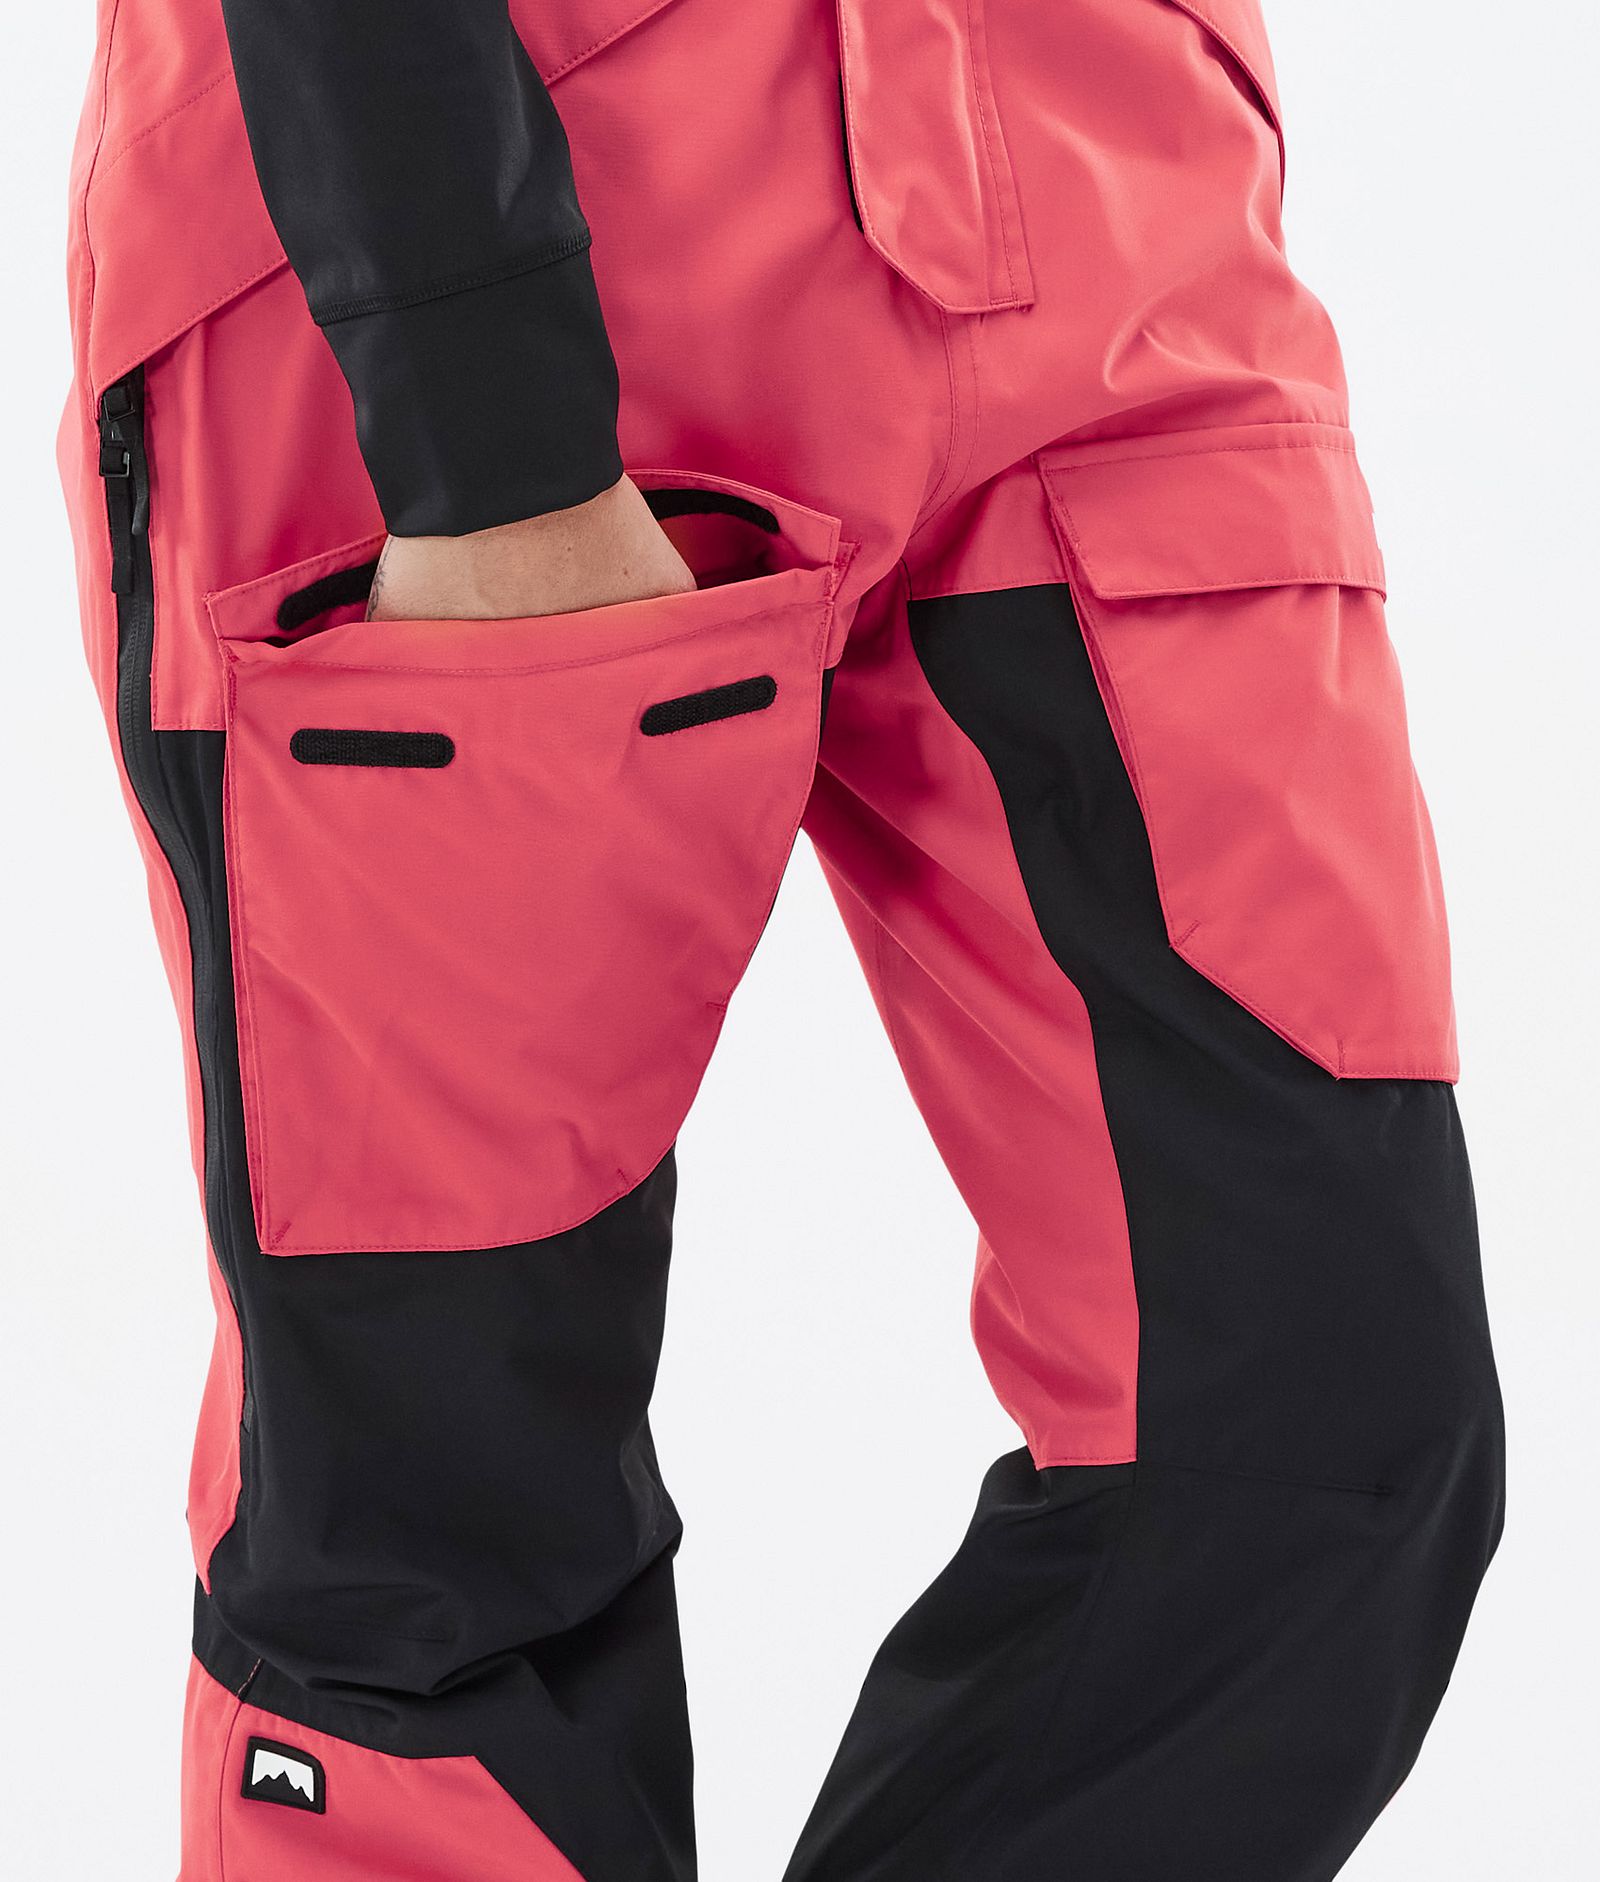 Montec Fawk W Snowboard Pants Women Coral/Black